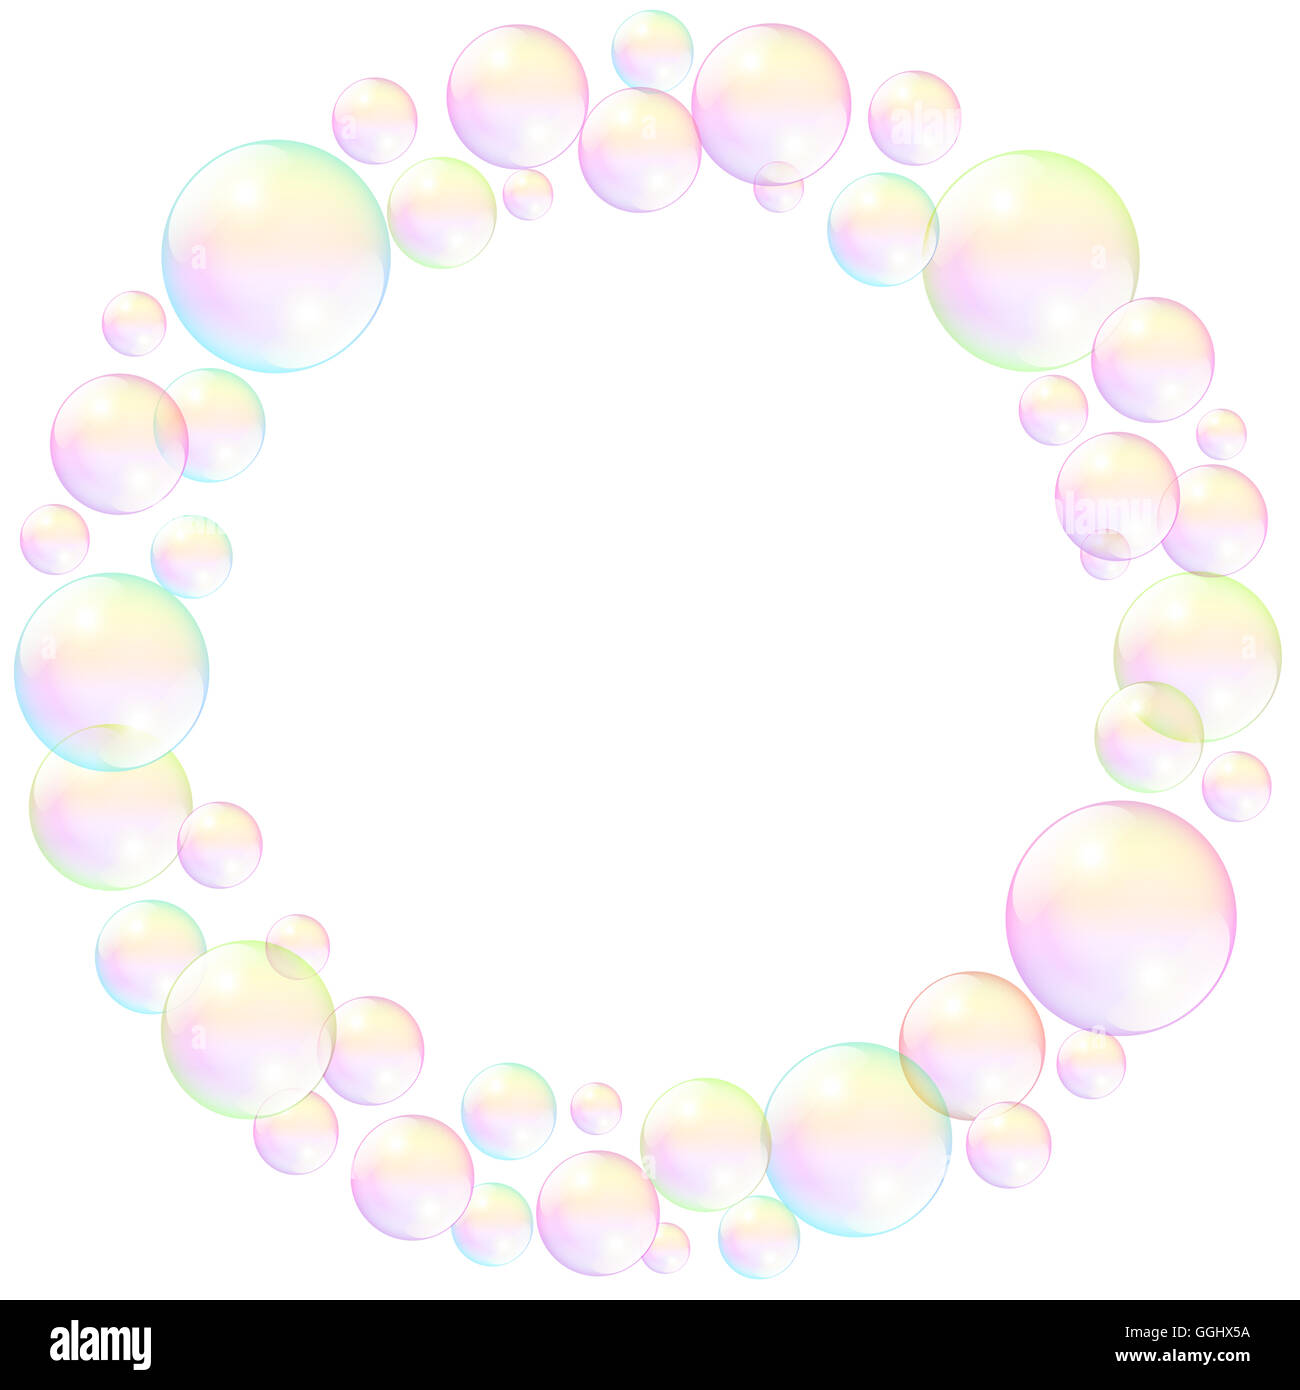 Burbujas de Jabón, armazón circular, realista ilustración tridimensional. Foto de stock